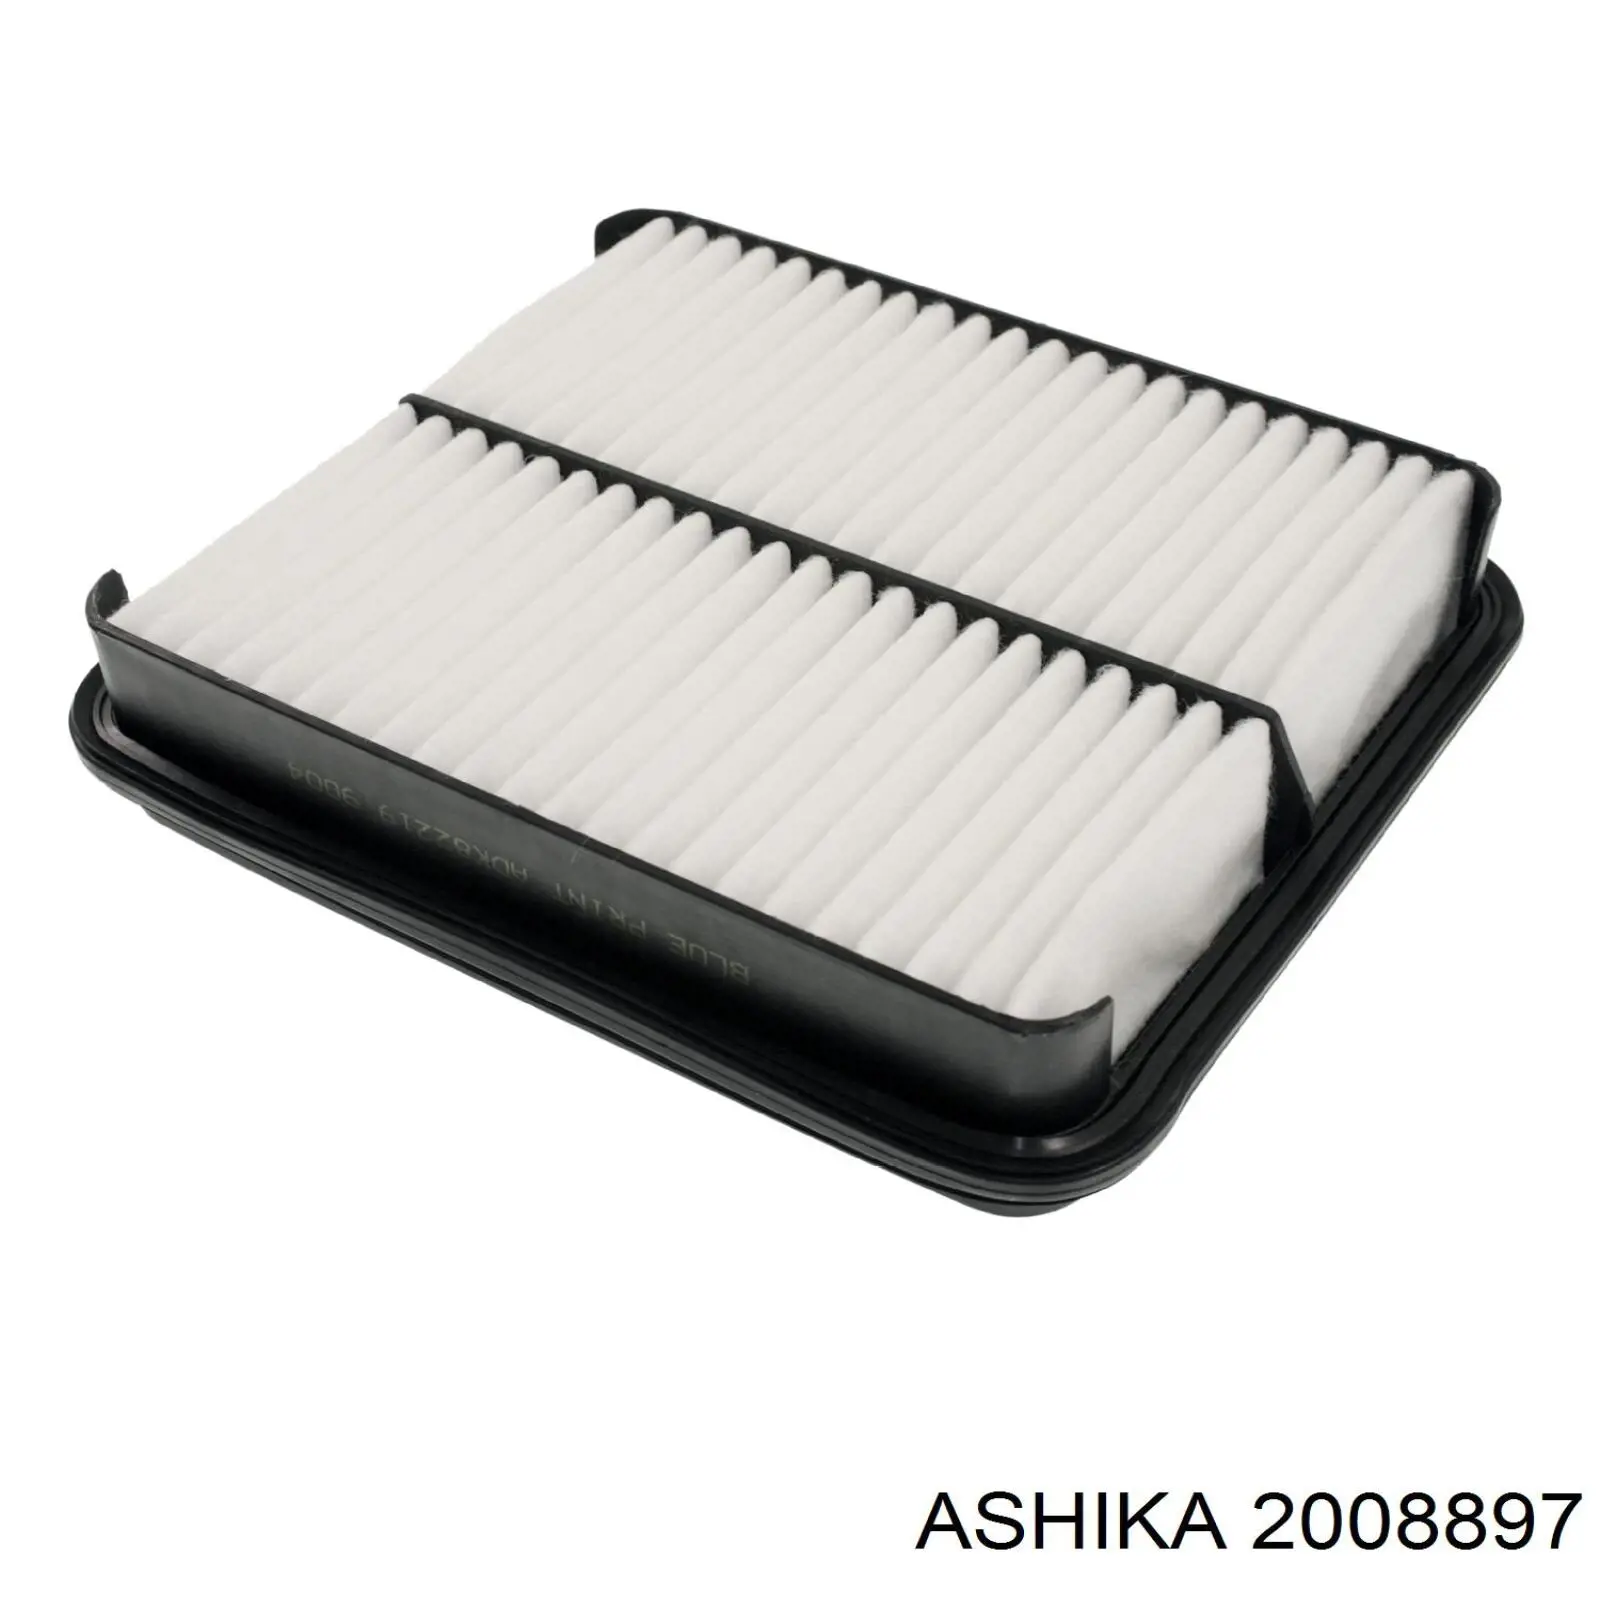 20-08-897 Ashika filtro de aire